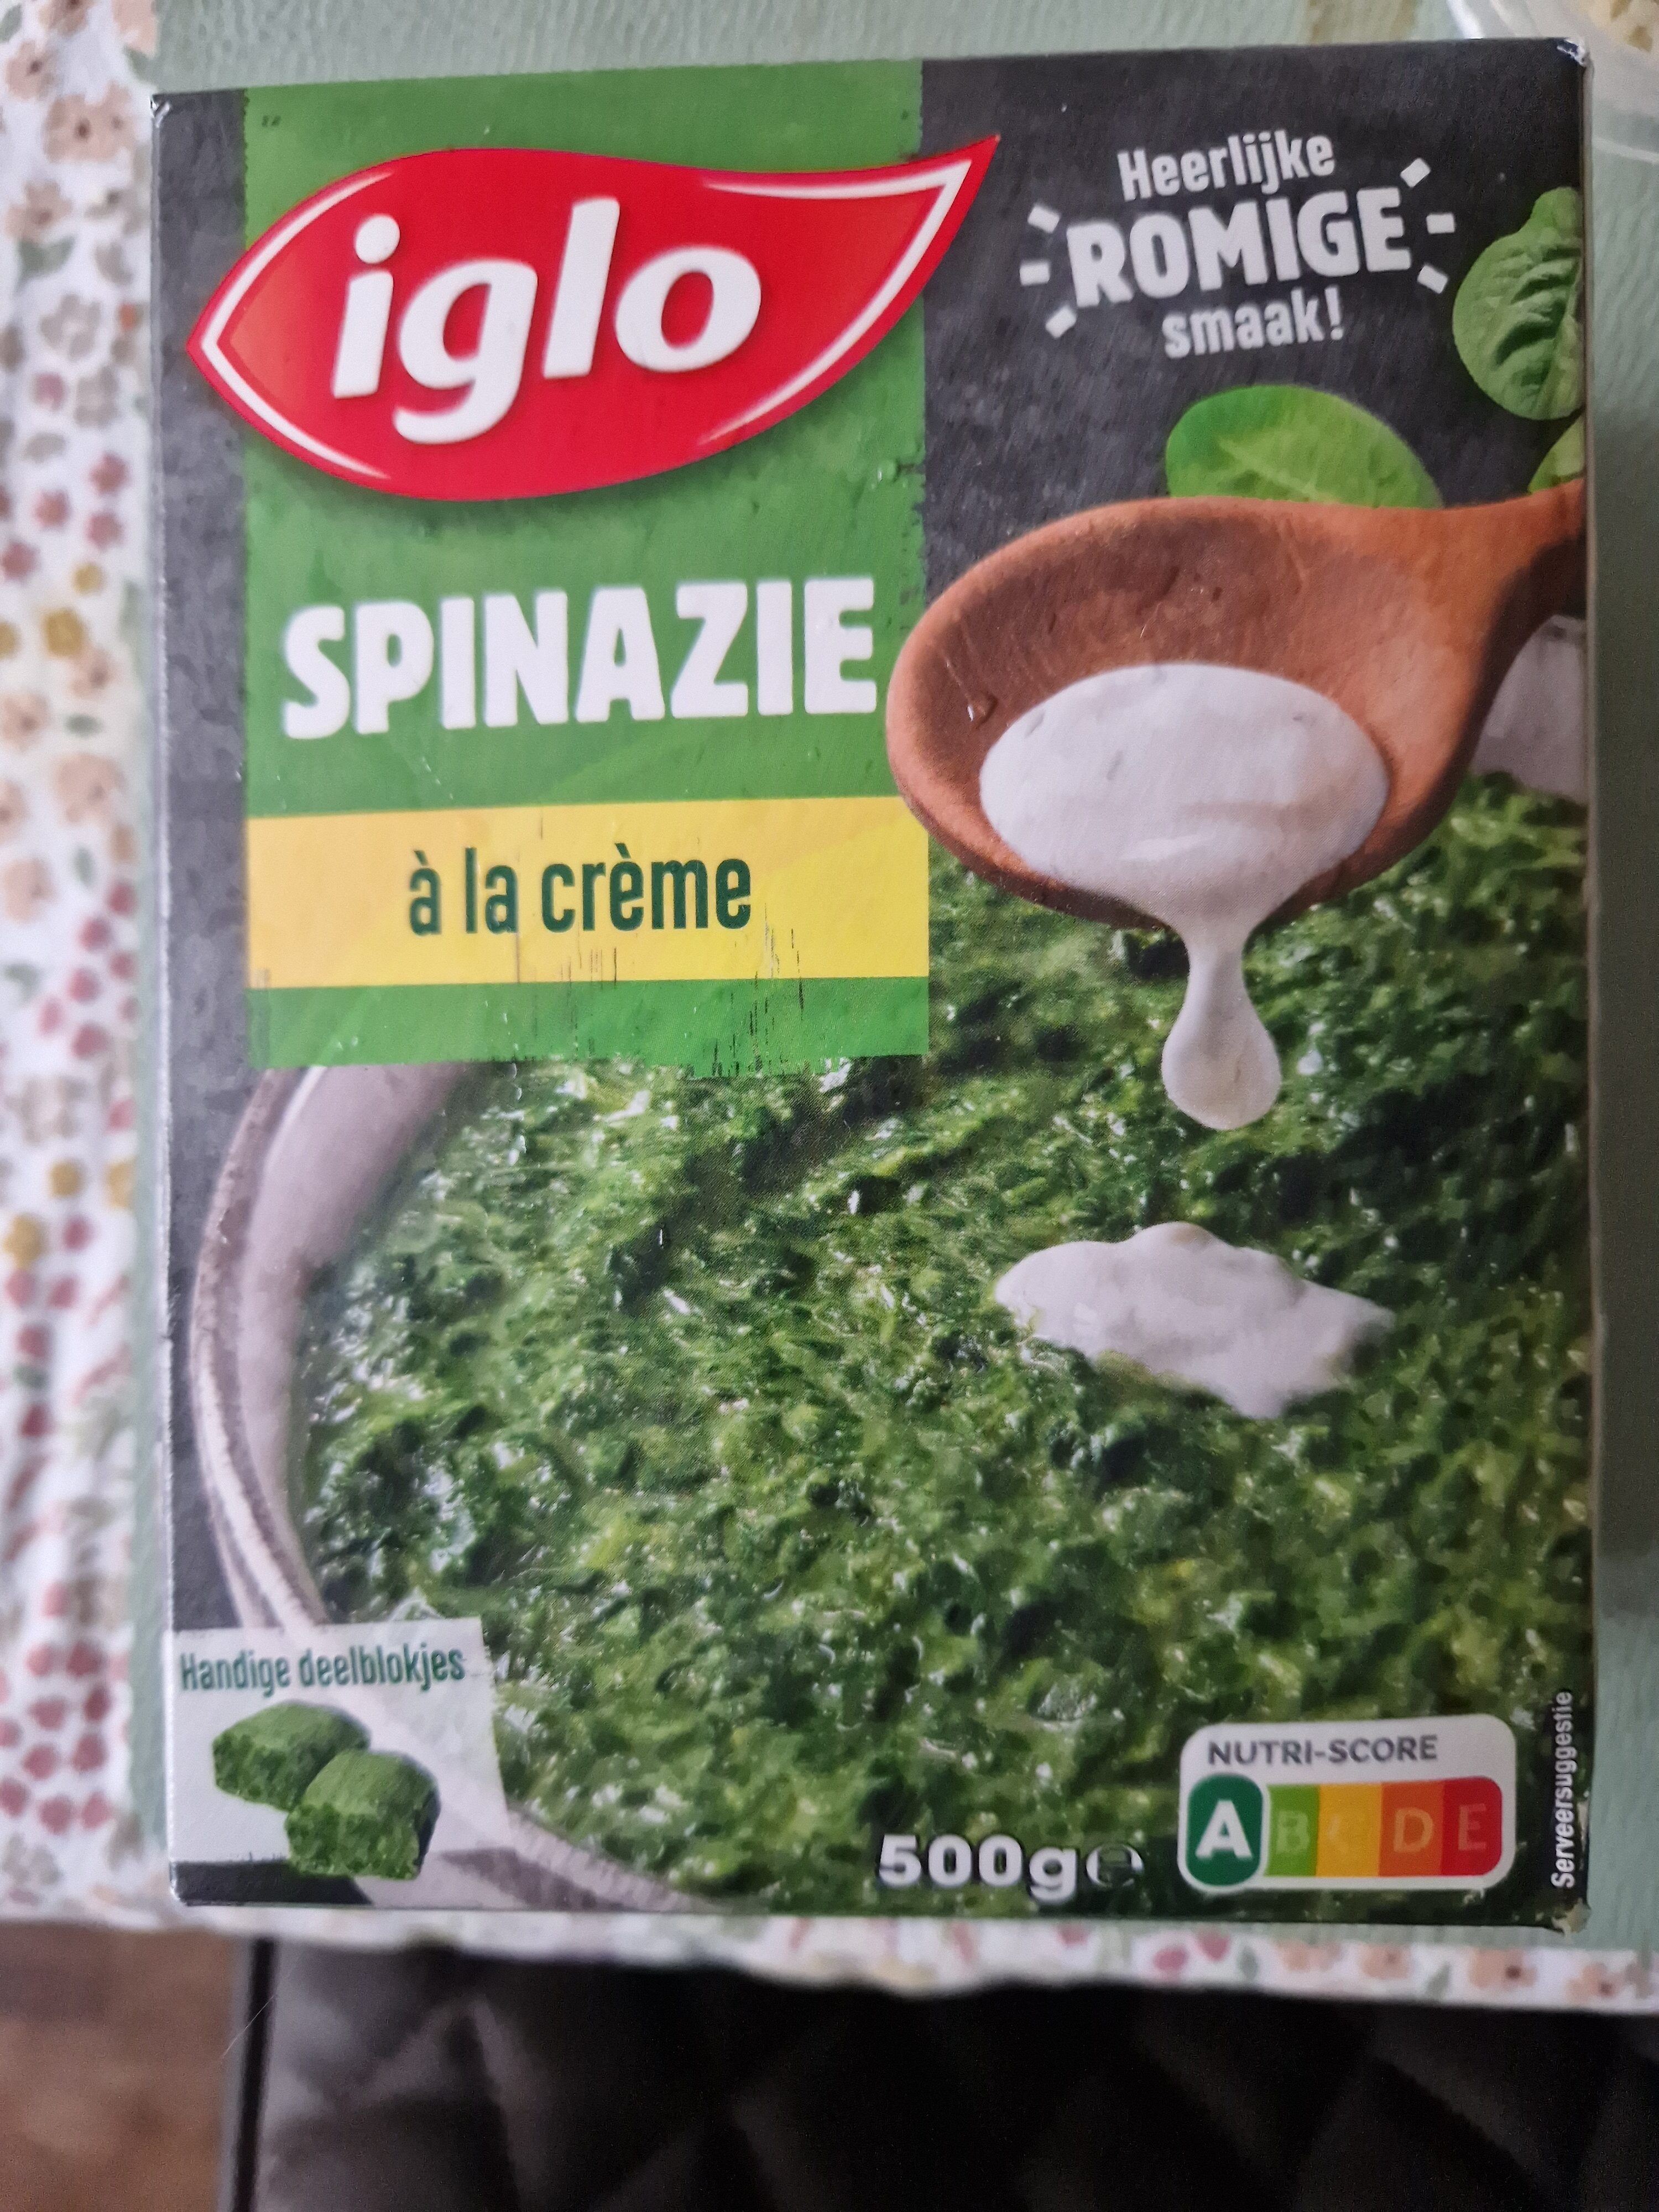 Spinazie, fijn gehakt, deelblokjes - Ingredients - nl